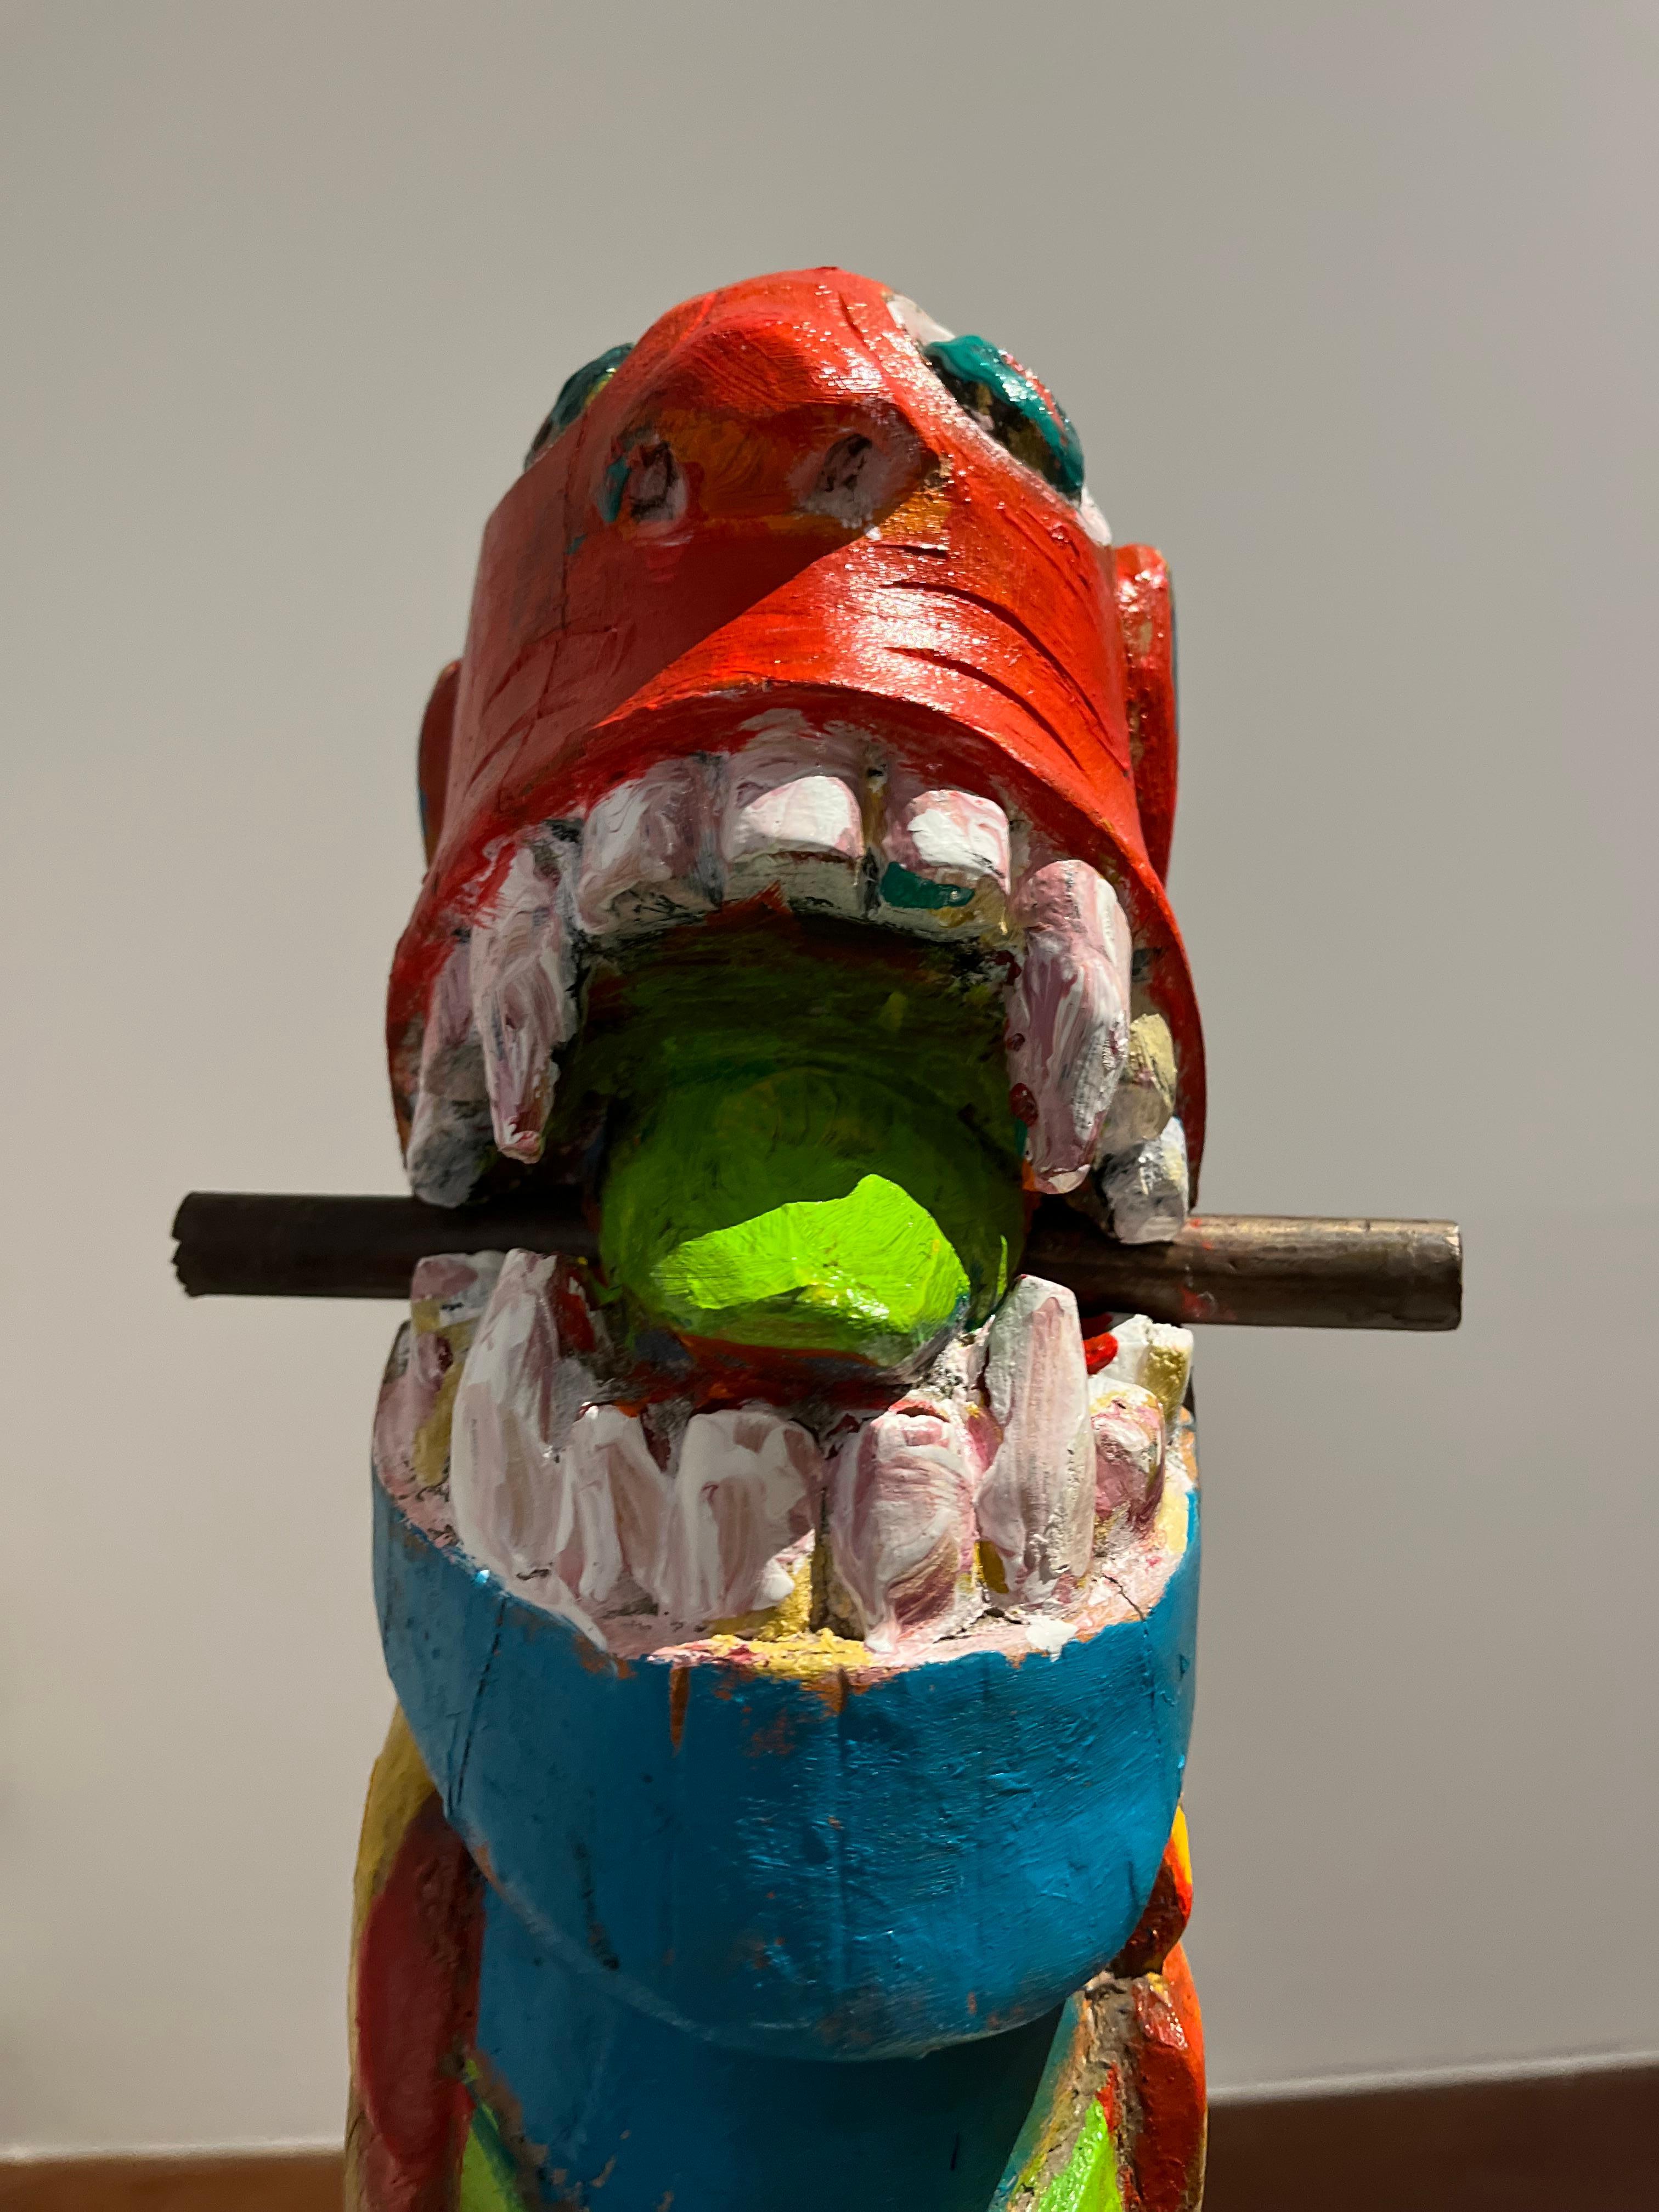 Apropriaçao frei de carranca, Figurative Sculpture. From the Series Sculptures For Sale 2